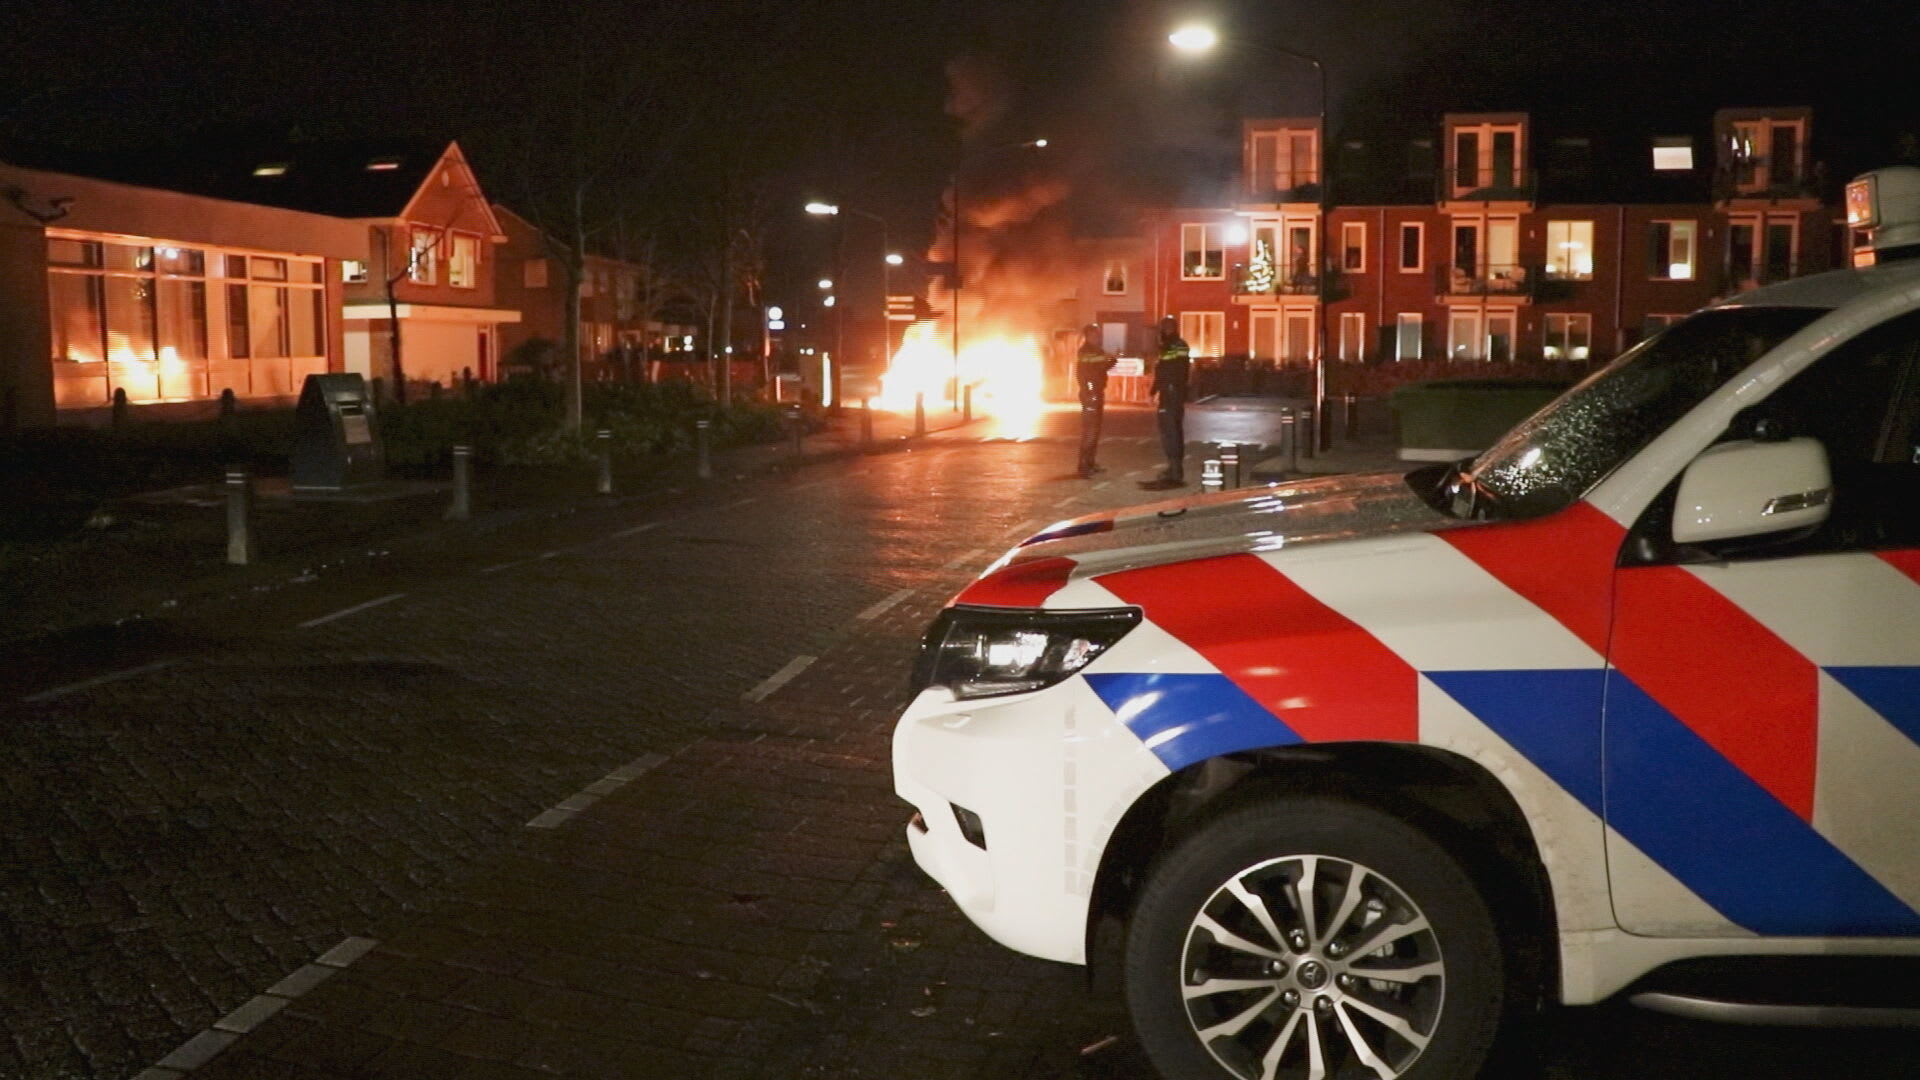 Ondanks noodverordening opnieuw auto in brand in Veen: 'Ze waren ons voor'